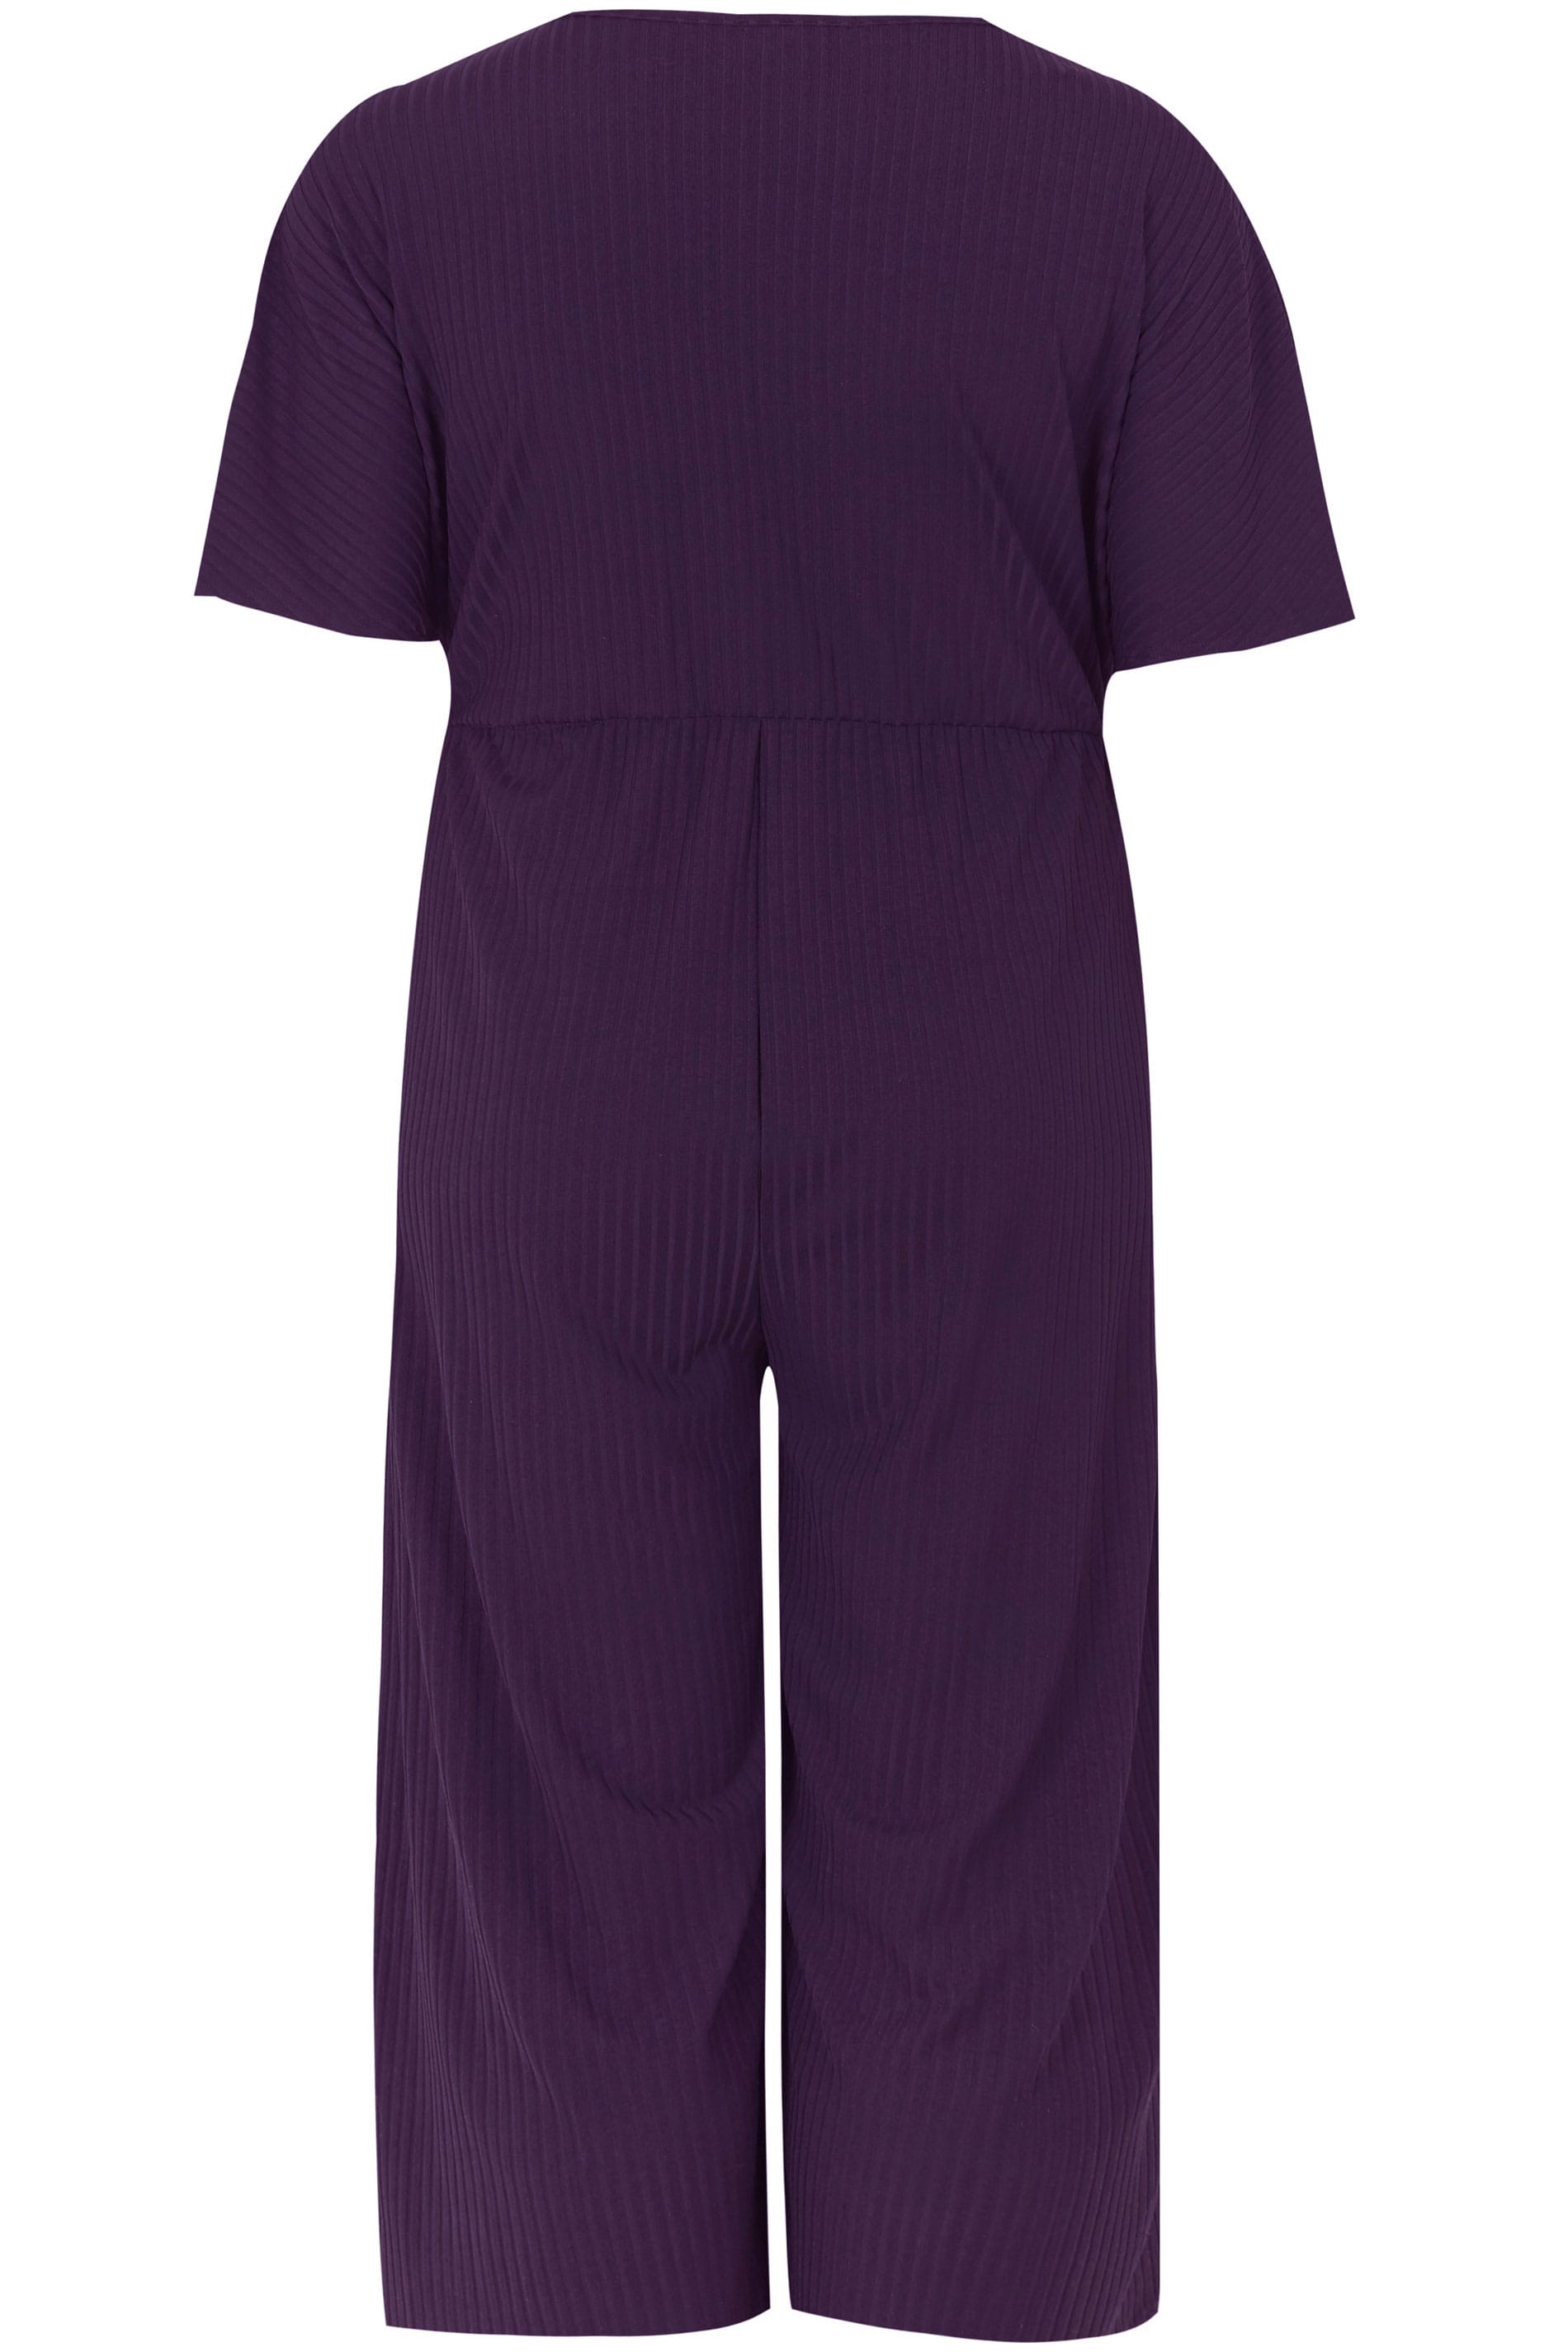 Dark Purple Wrap Front Culotte Jumpsuit , plus size 16 to 36